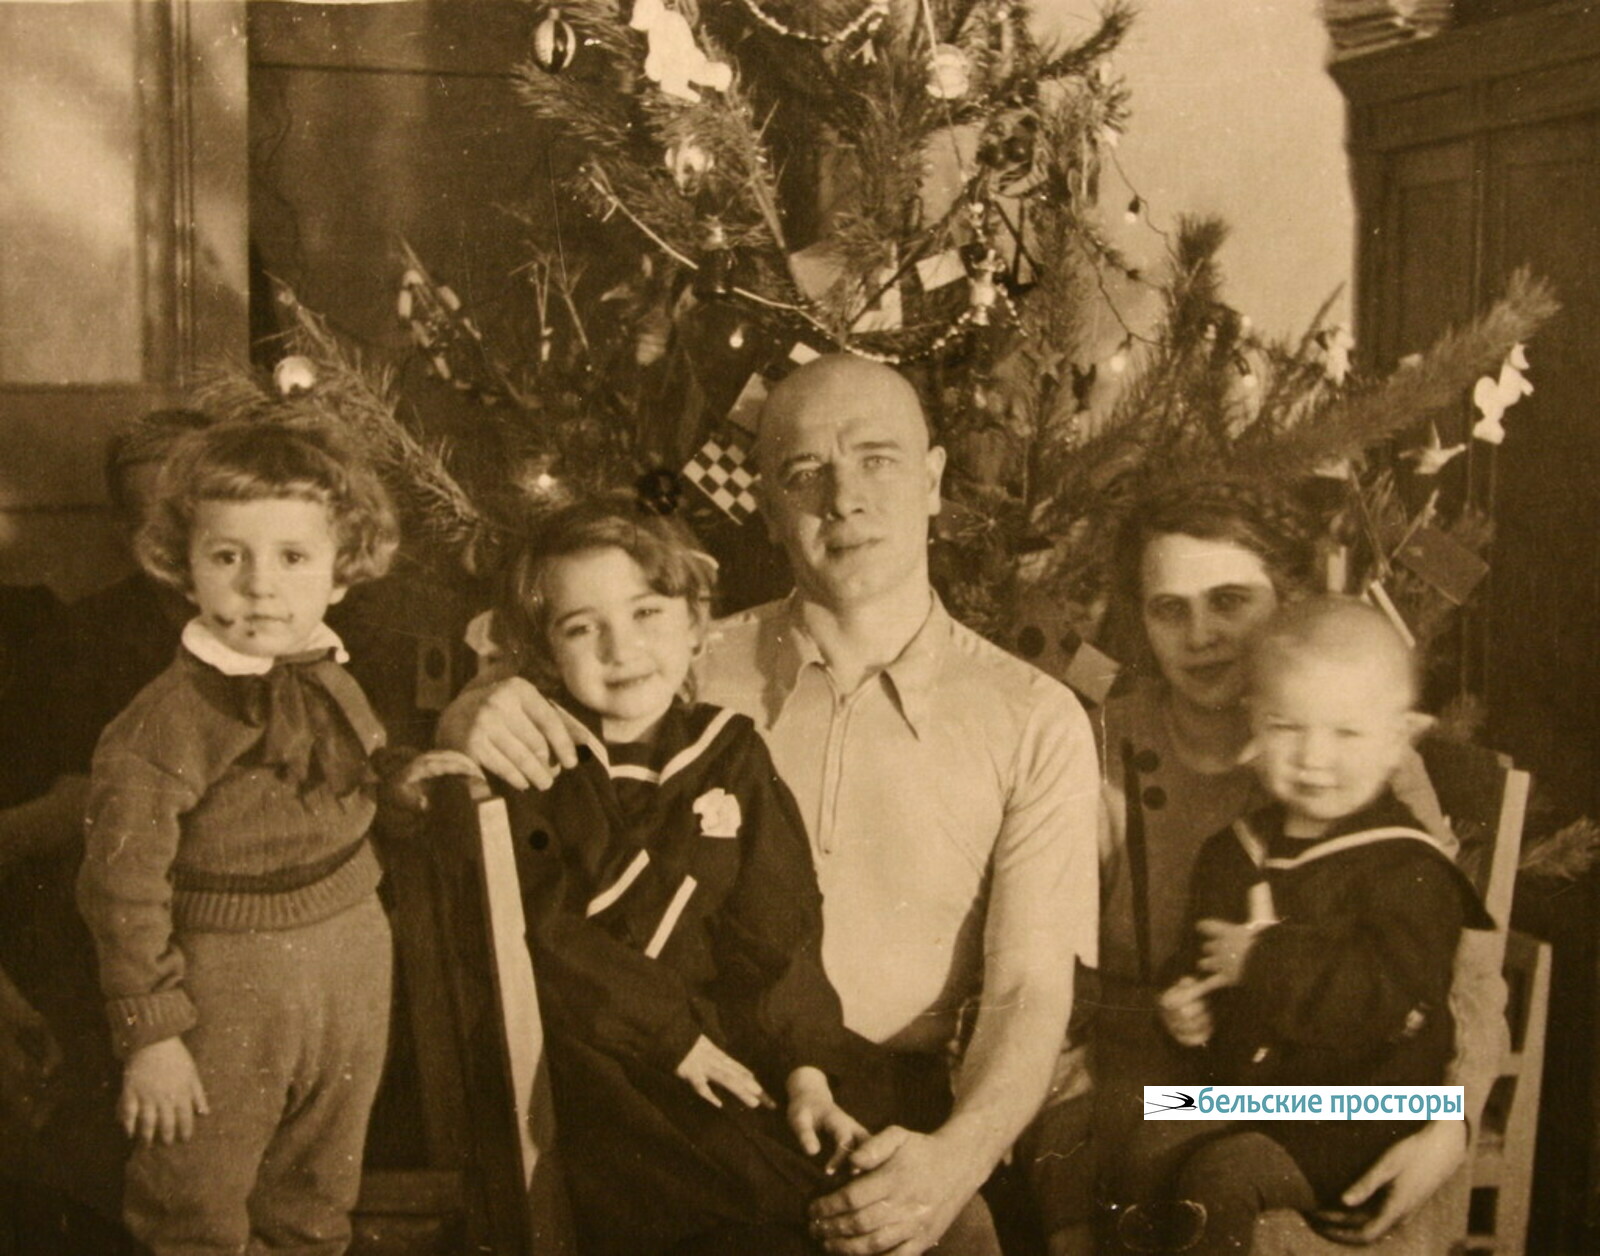 На снимке 1 января 1956 г. в Новой Александровке В. Скачилов и Т. Романкевич с детьми — Сусанной и Мишей. Стоит Володя Вехновский.